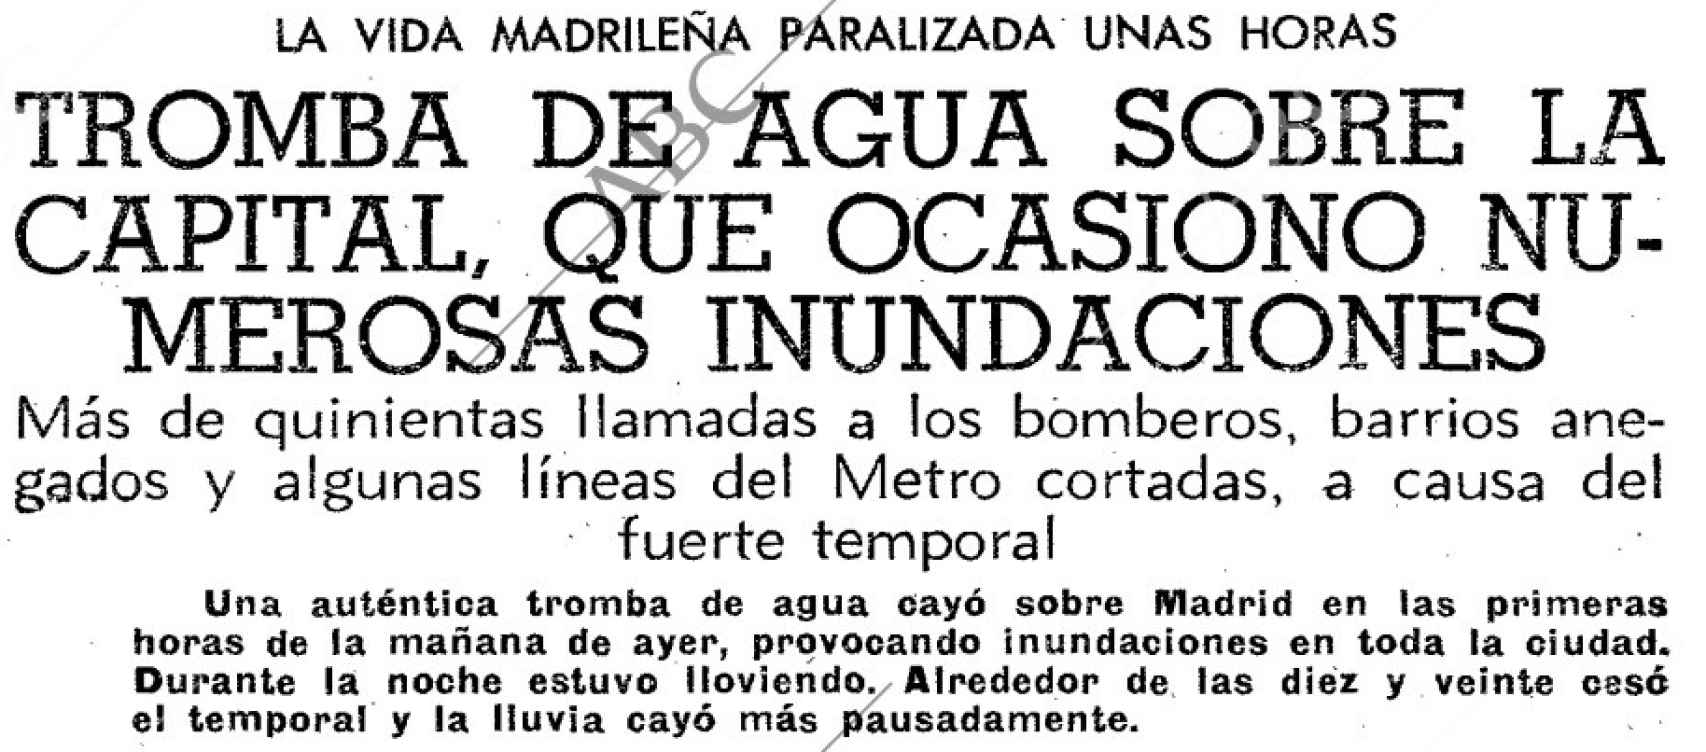 Titular de la crónica de ABC del gran diluvio de 1972.